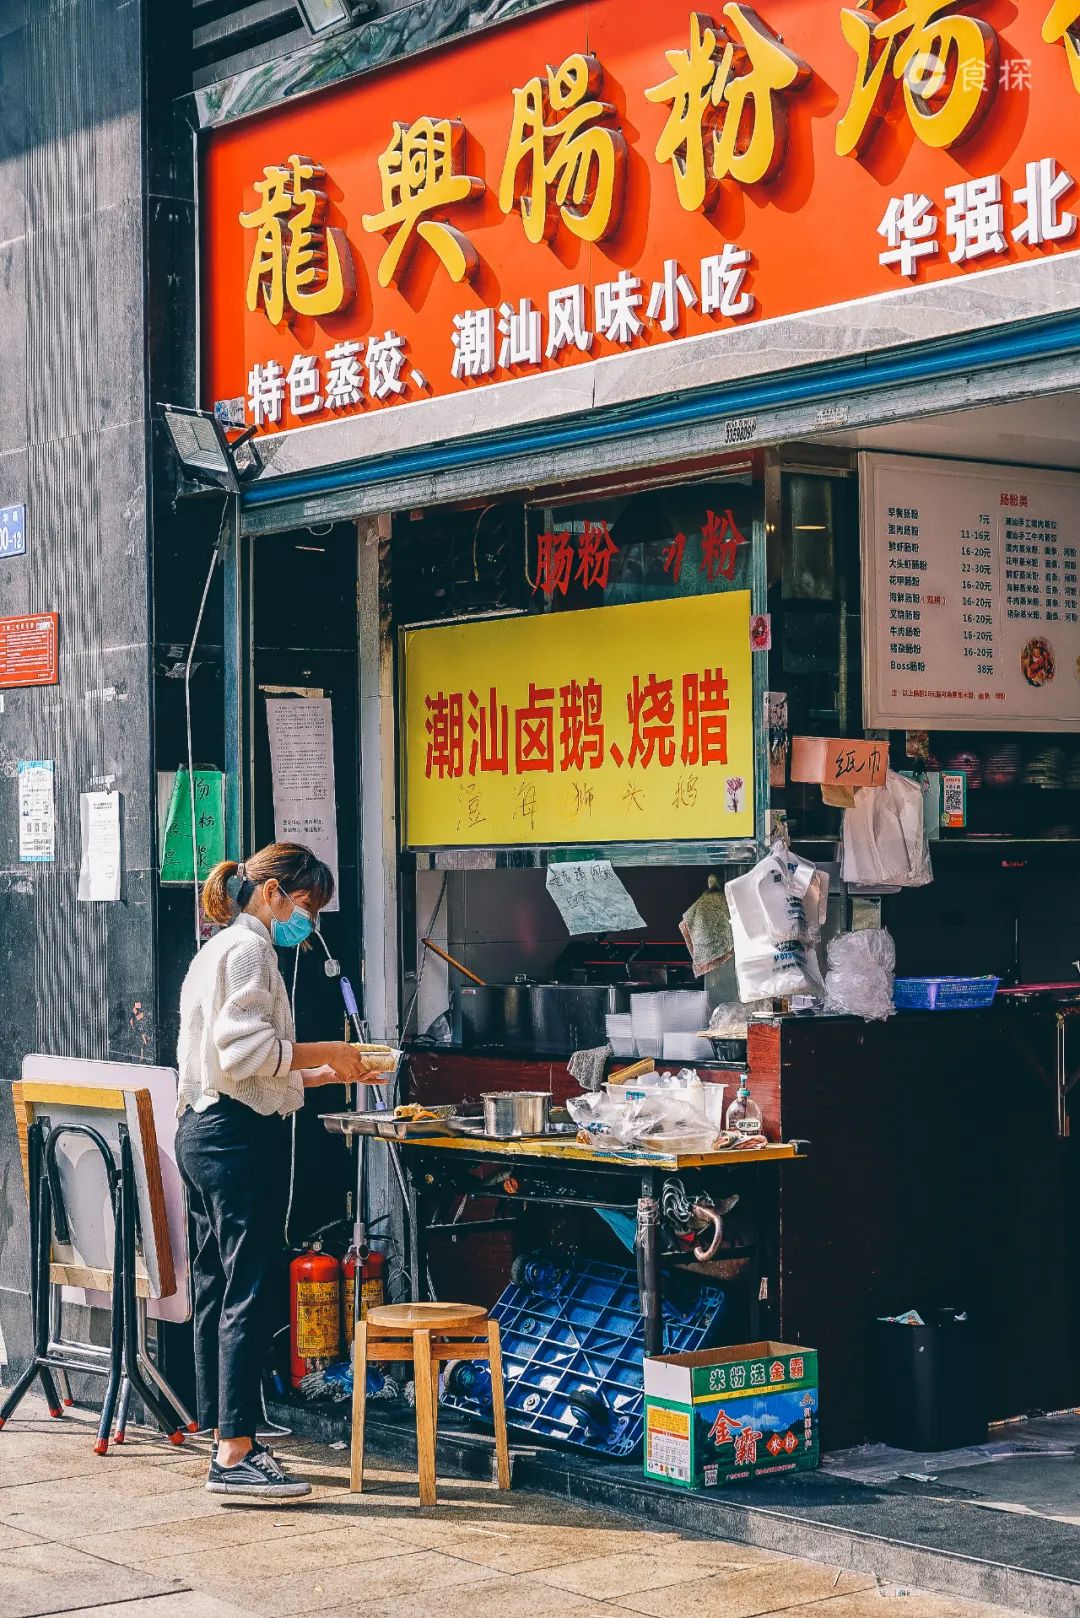 挺住后疫情时期深圳的美食街仍待重启